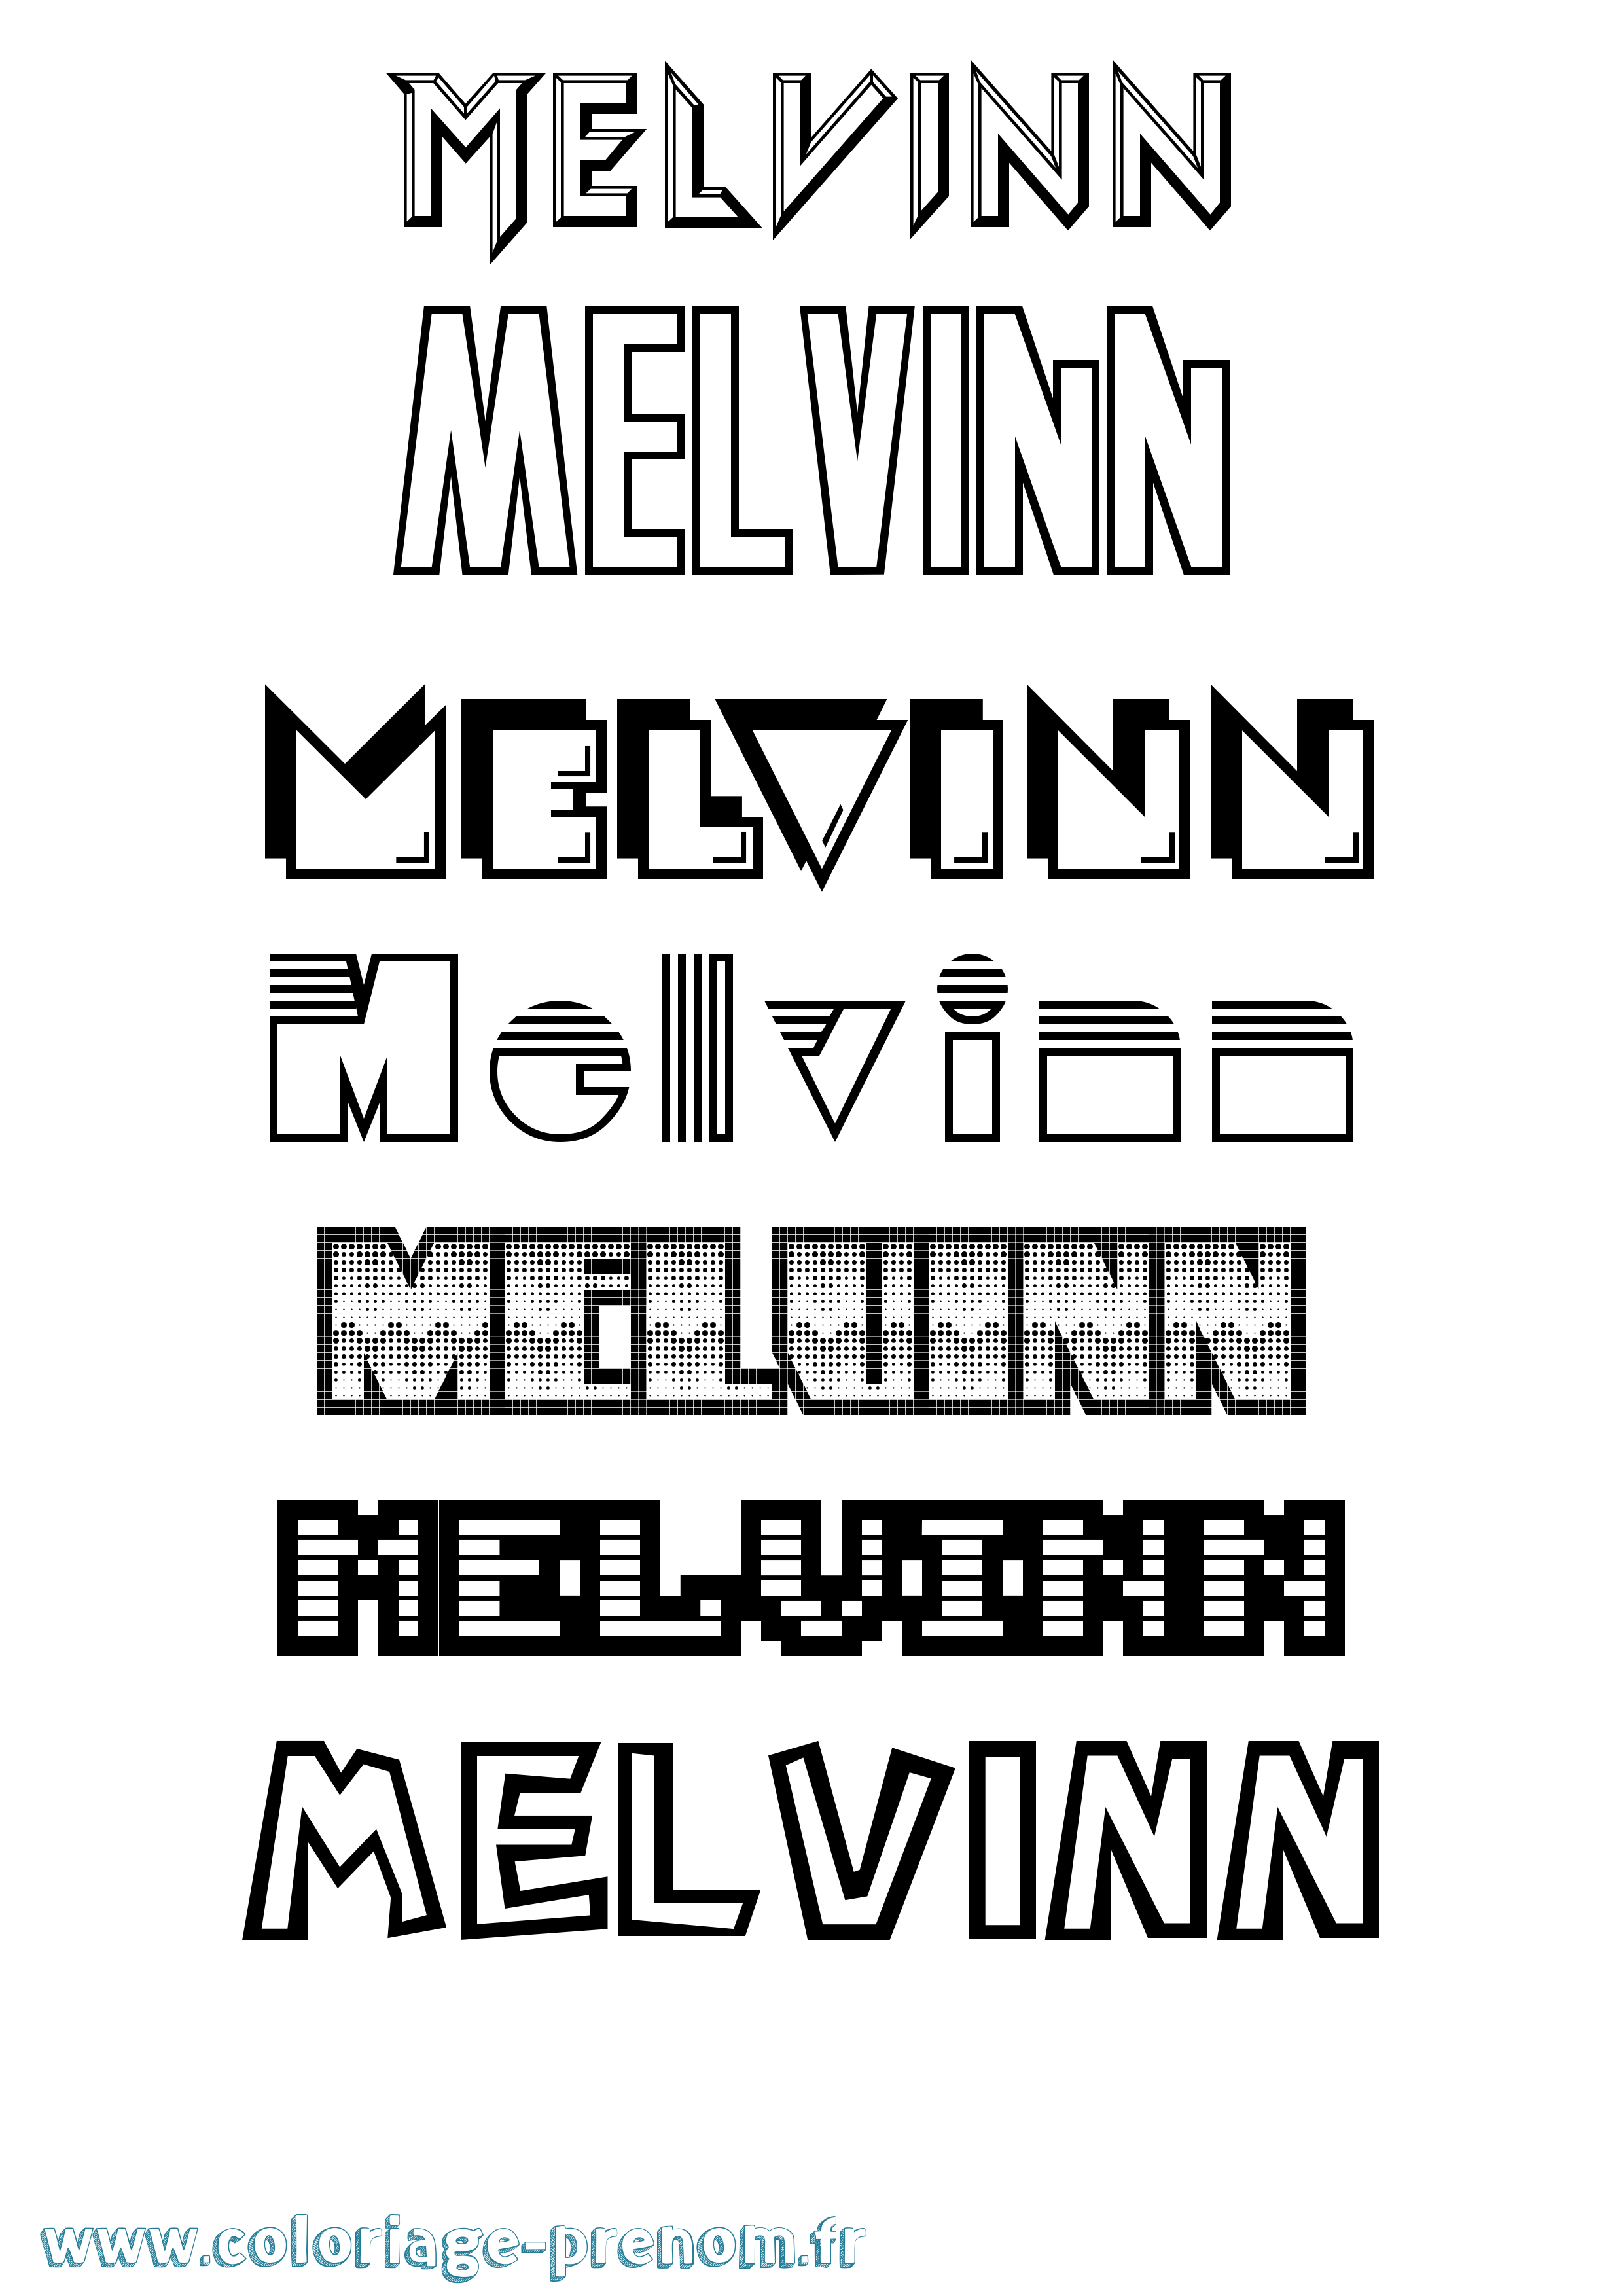 Coloriage prénom Melvinn Jeux Vidéos